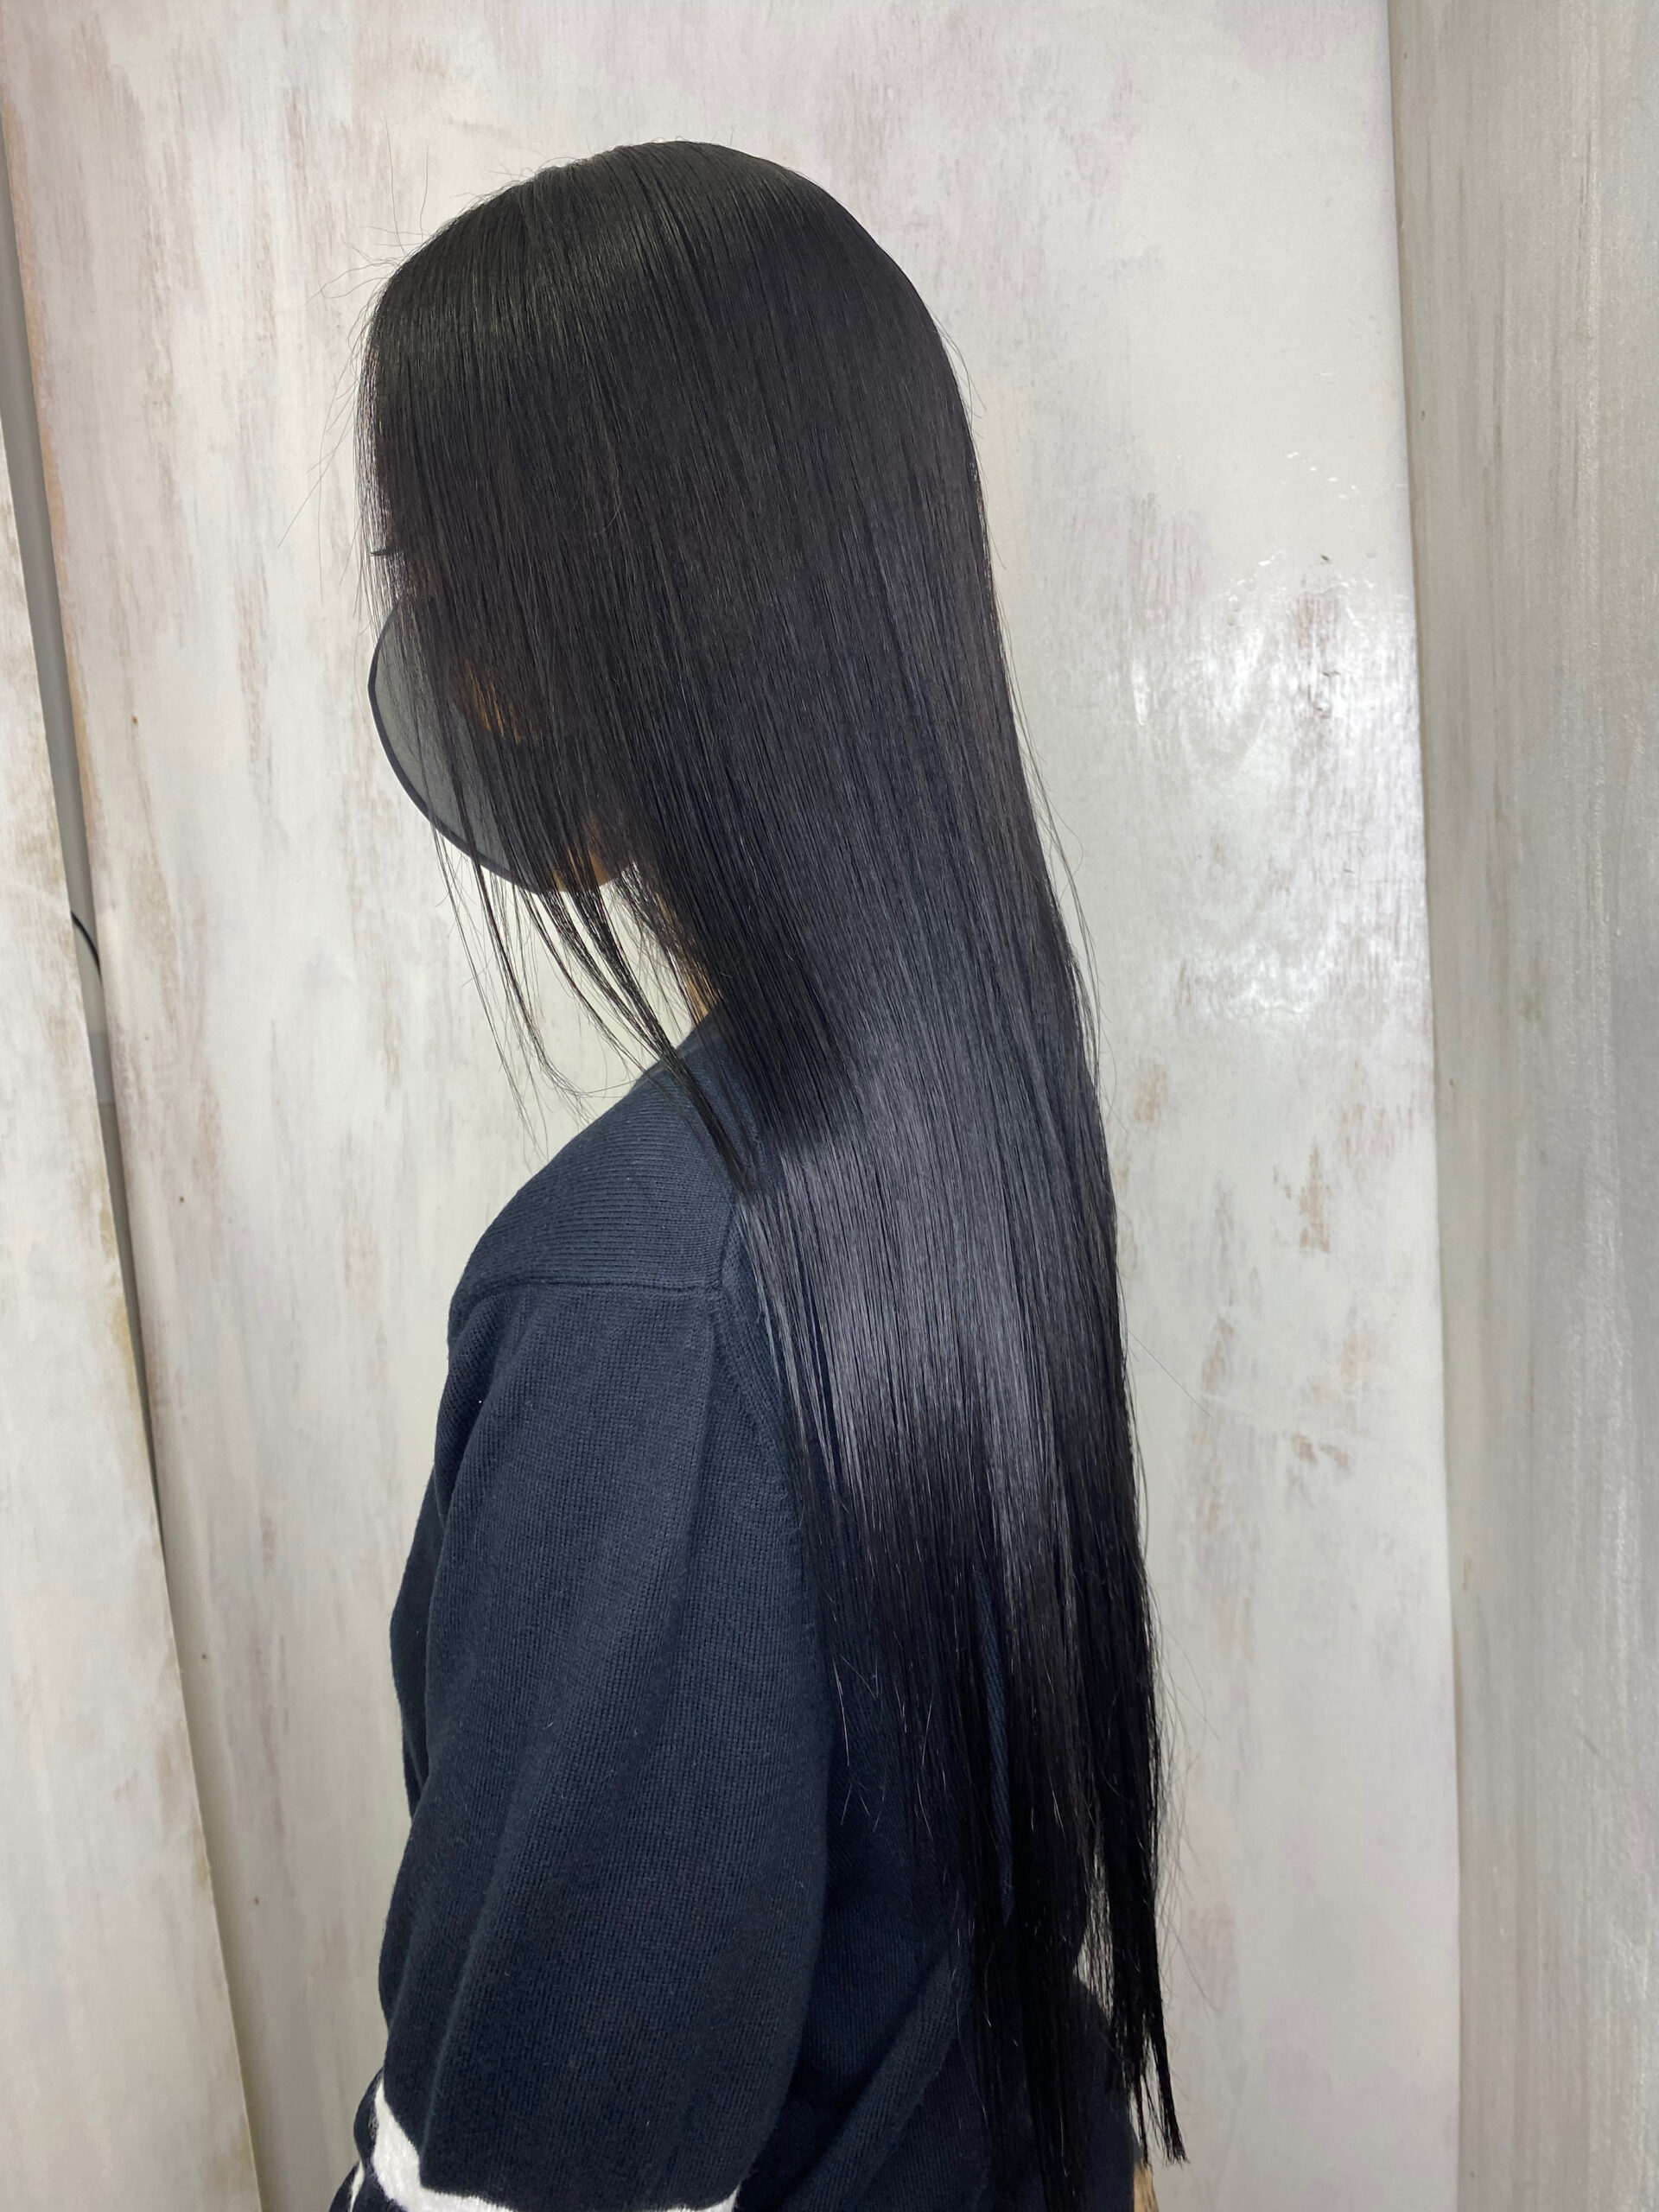 高難易度ジュエリーシステム縮毛矯正【CALURE】でくせ毛が気になる方を艶髪ストレートヘア。